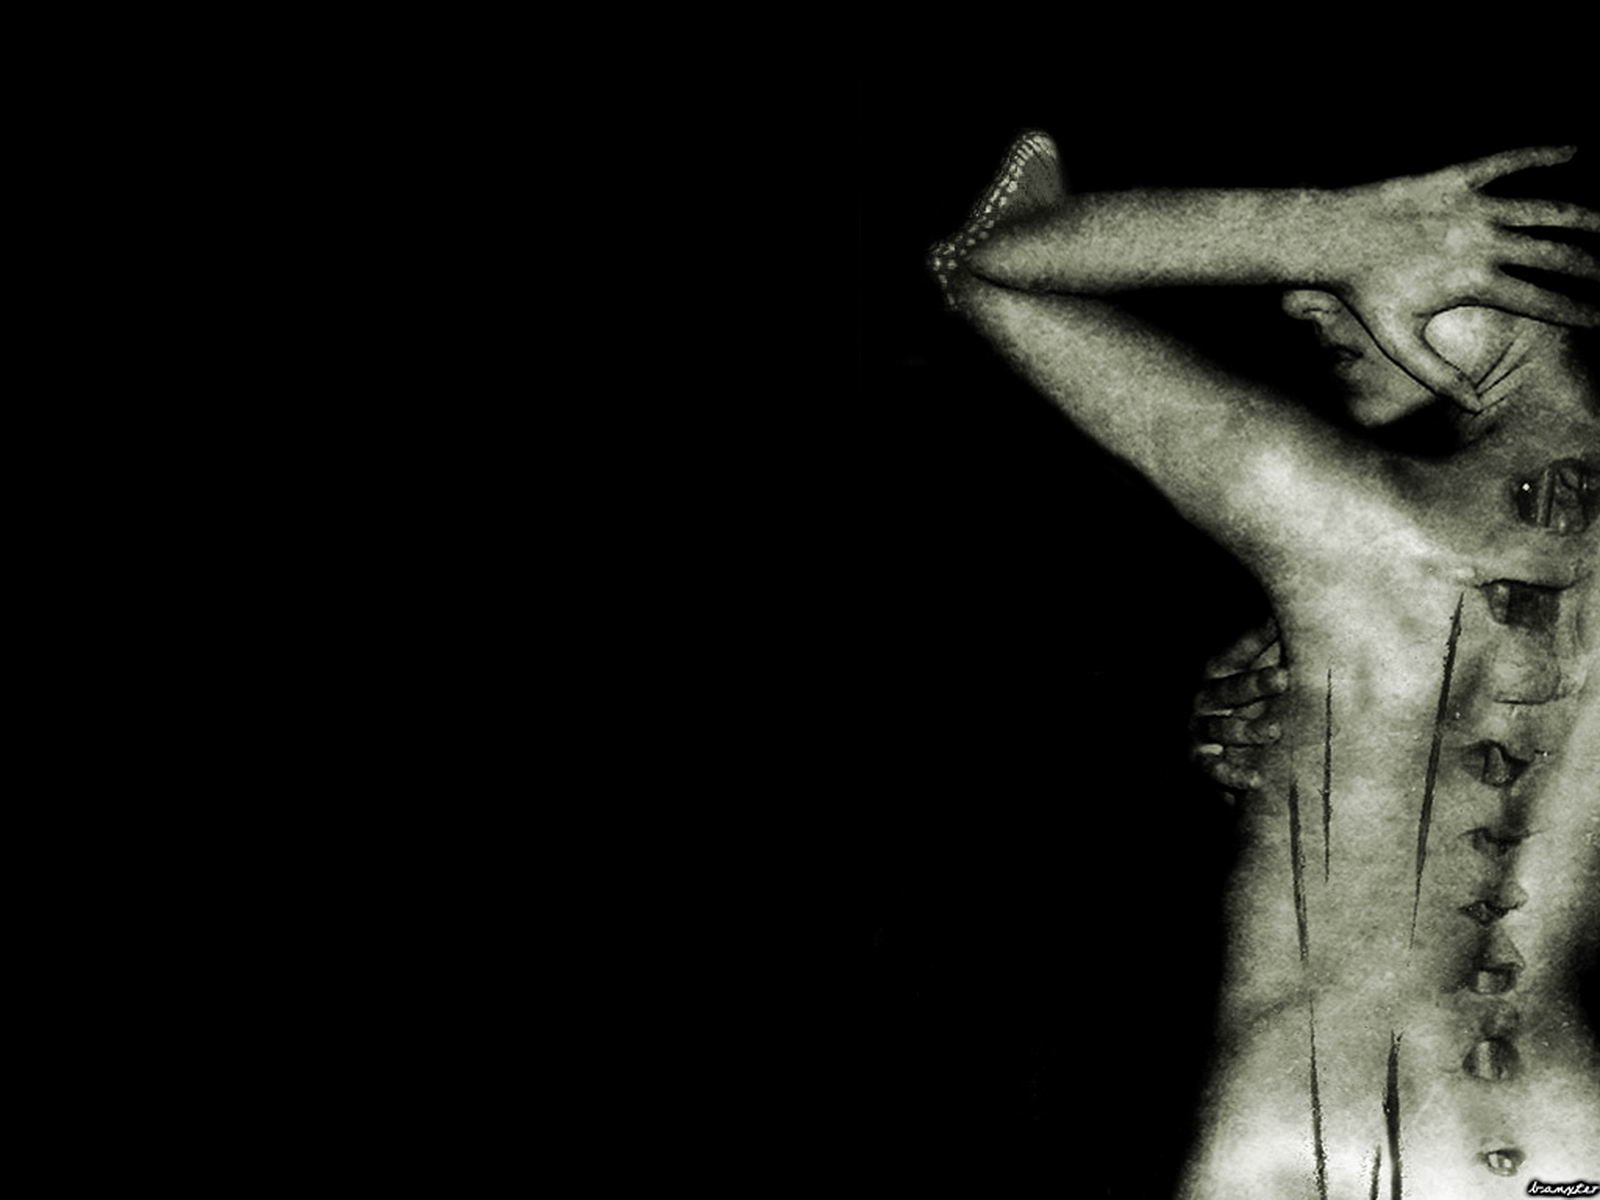 horror fondos de pantalla 3d,negro,en blanco y negro,fotografía monocroma,mano,humano